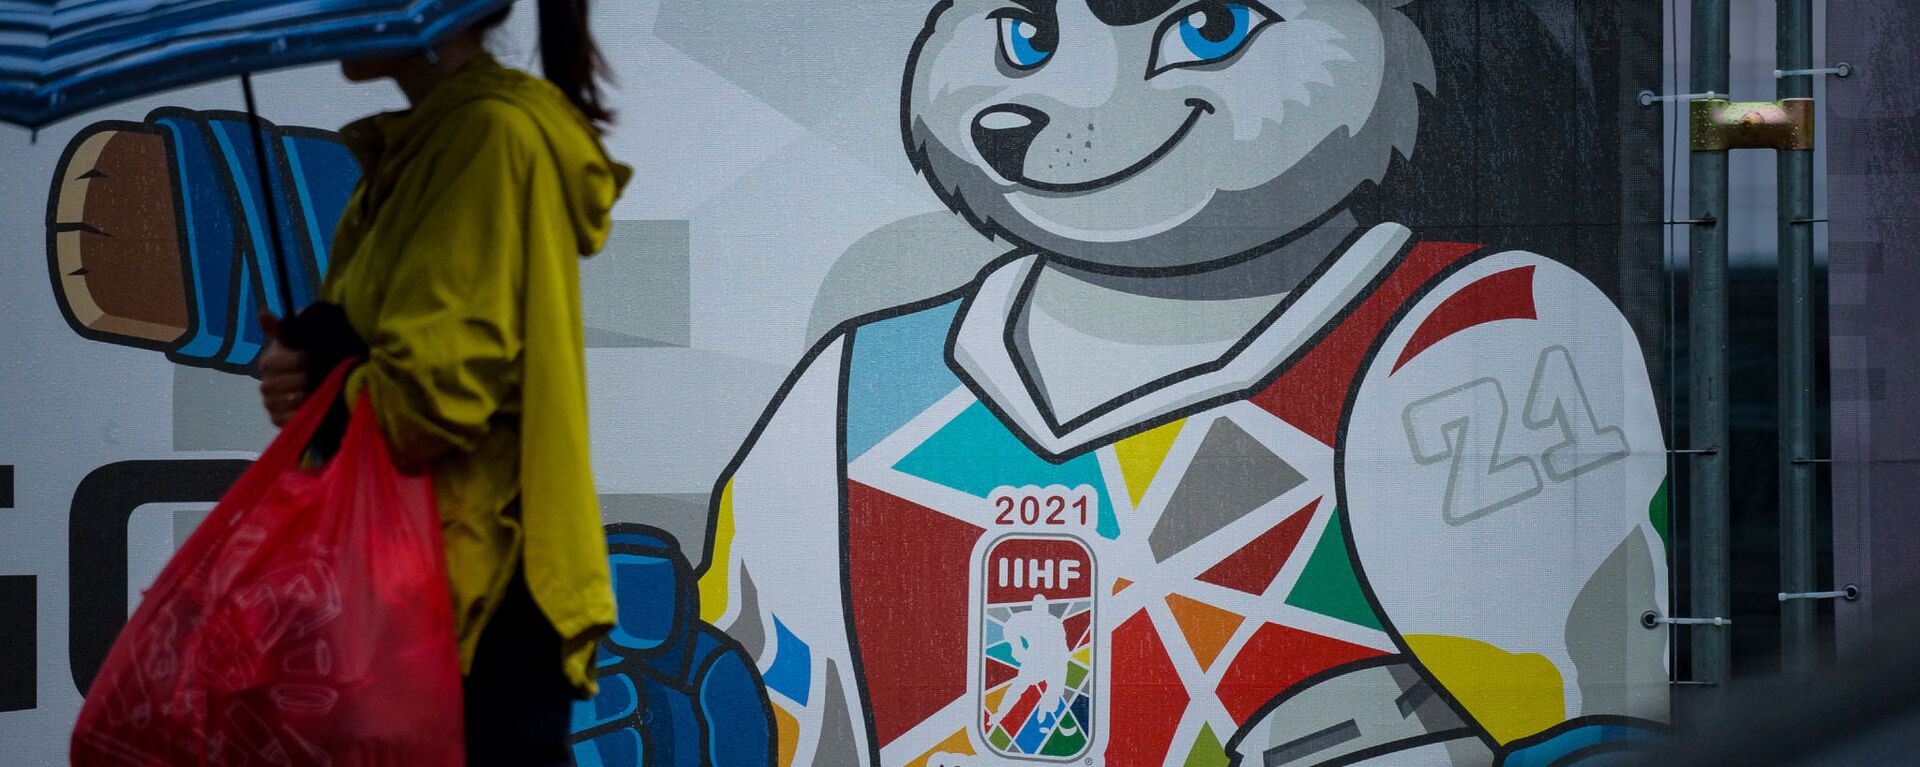 Информационный плакат  на заборе вокруг пузыря где пройдет Чемпионат мира - 2021 по хоккею в Риге - Sputnik Латвия, 1920, 20.05.2021